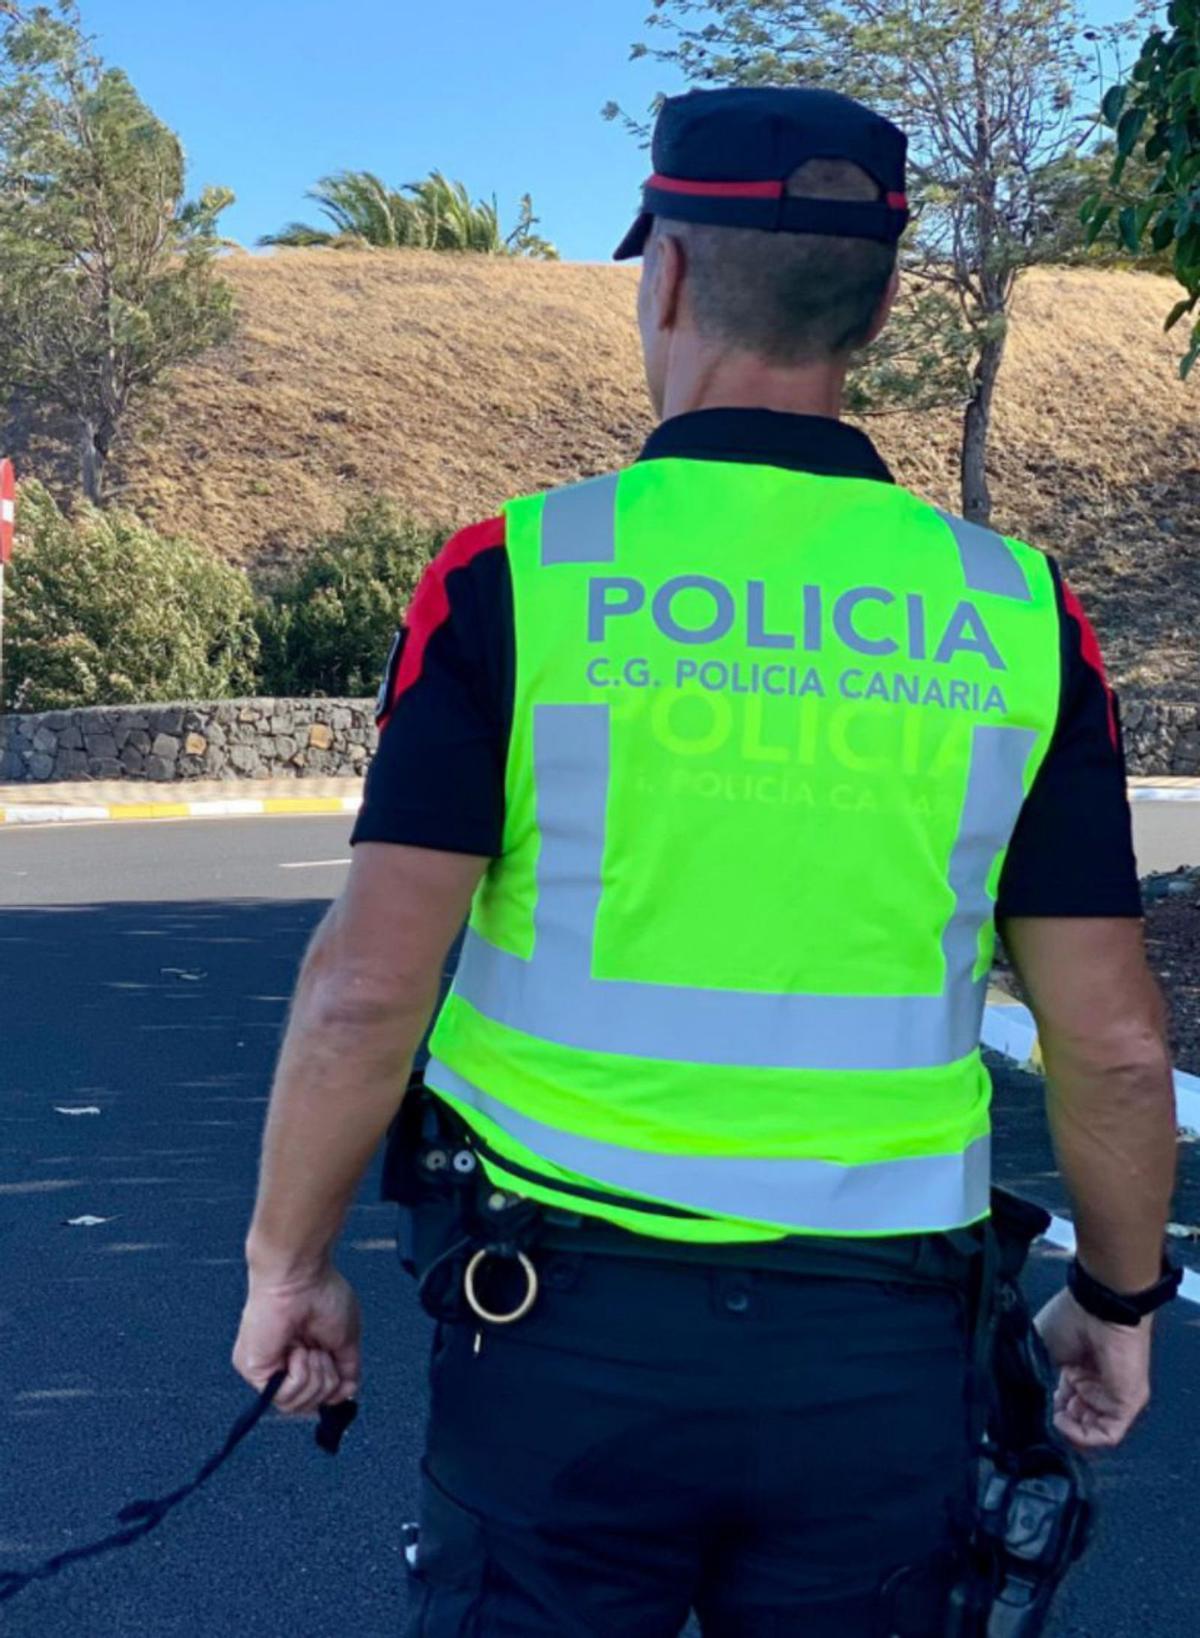 ESPECIAL Policía Canaria | GUSTAVO EXPÓSITO ENTRENANDO.